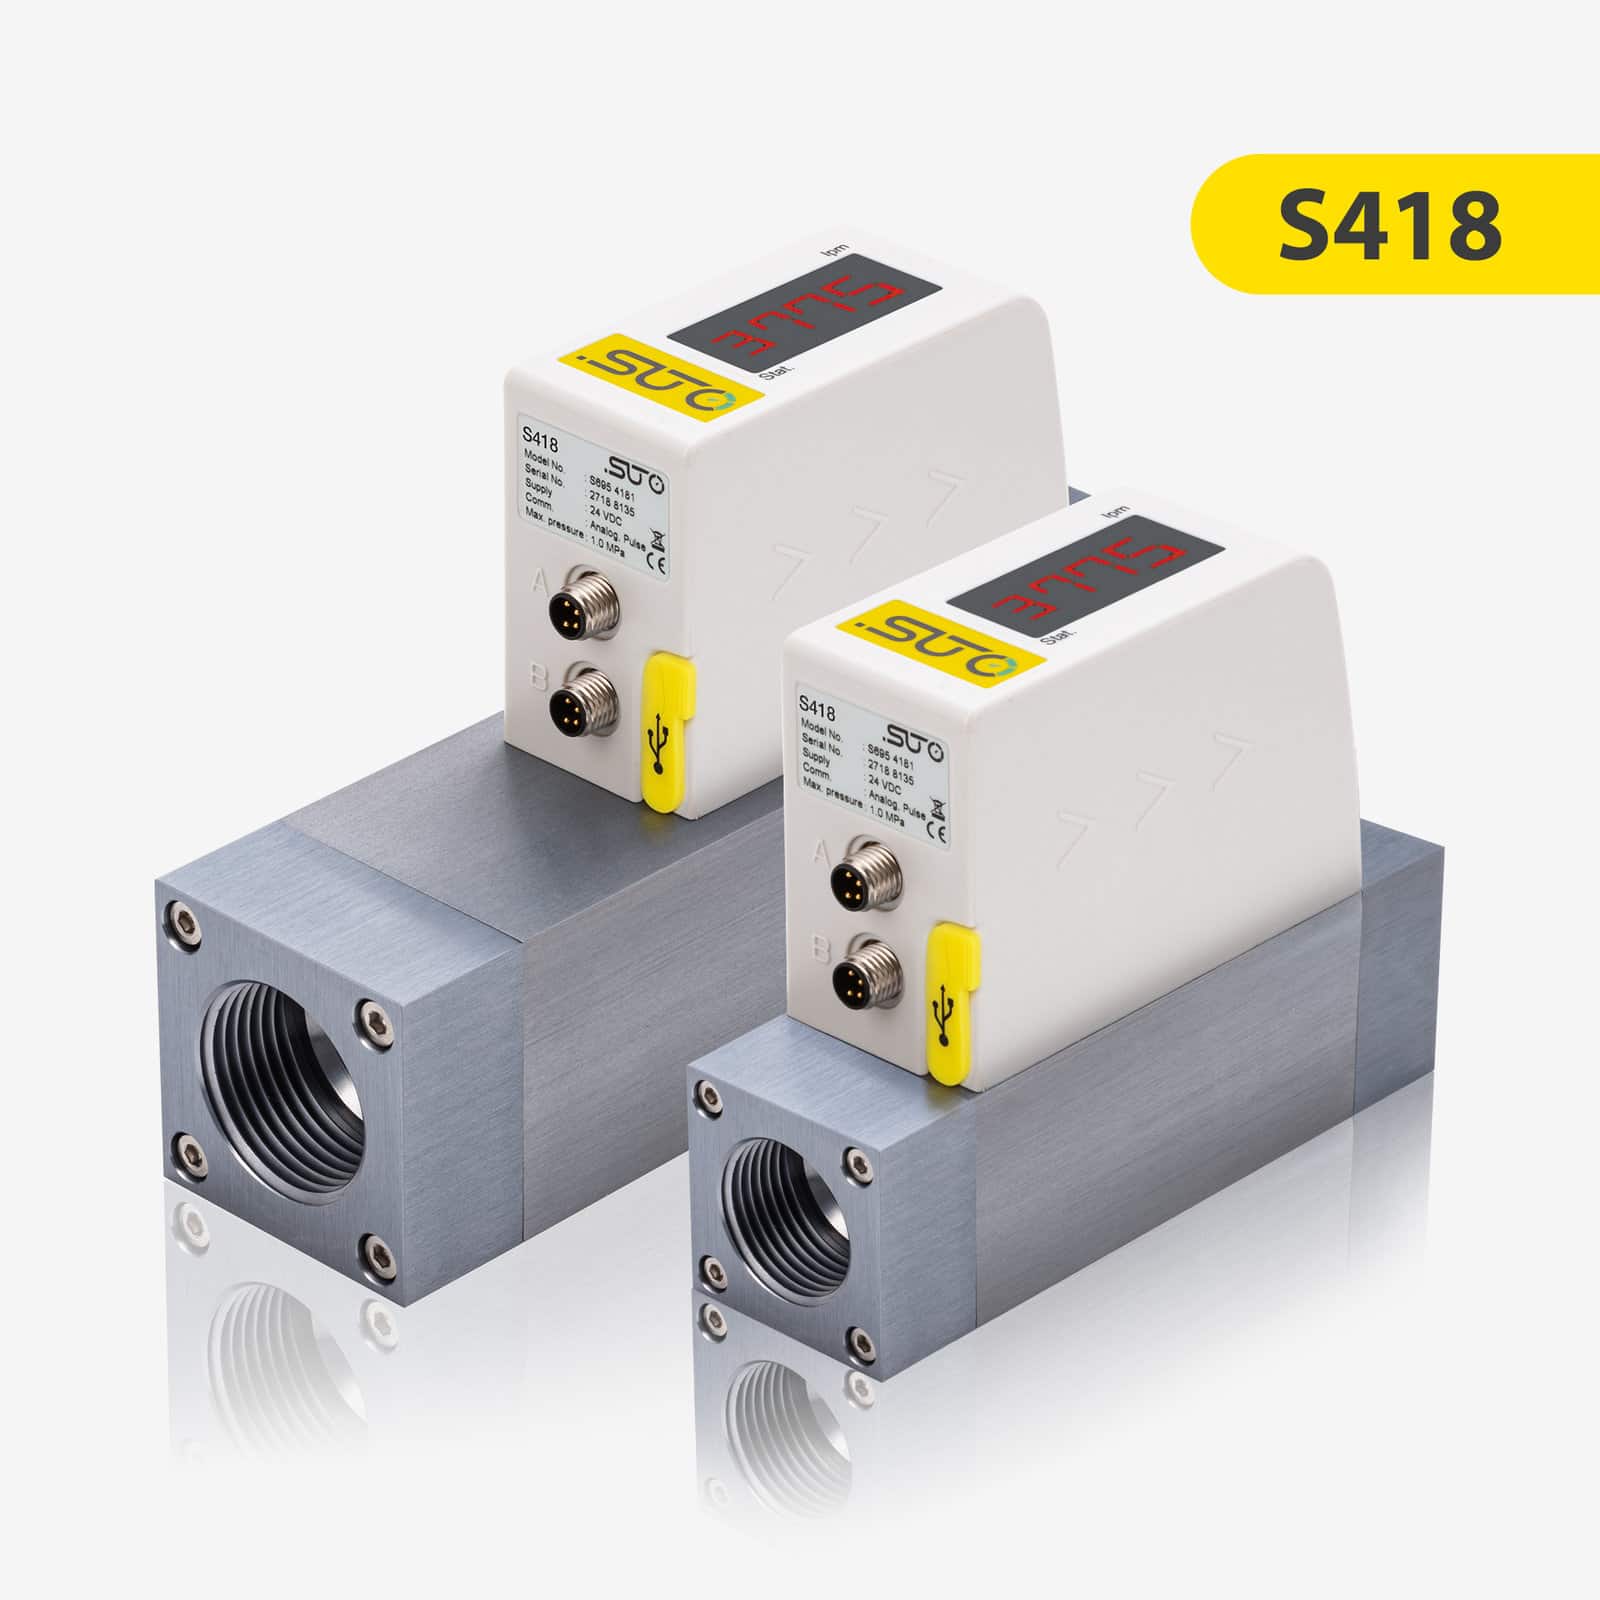 S418 Kompaktowy czujnik przepływu sprężonego powietrza i gazów (Pro-Inline)